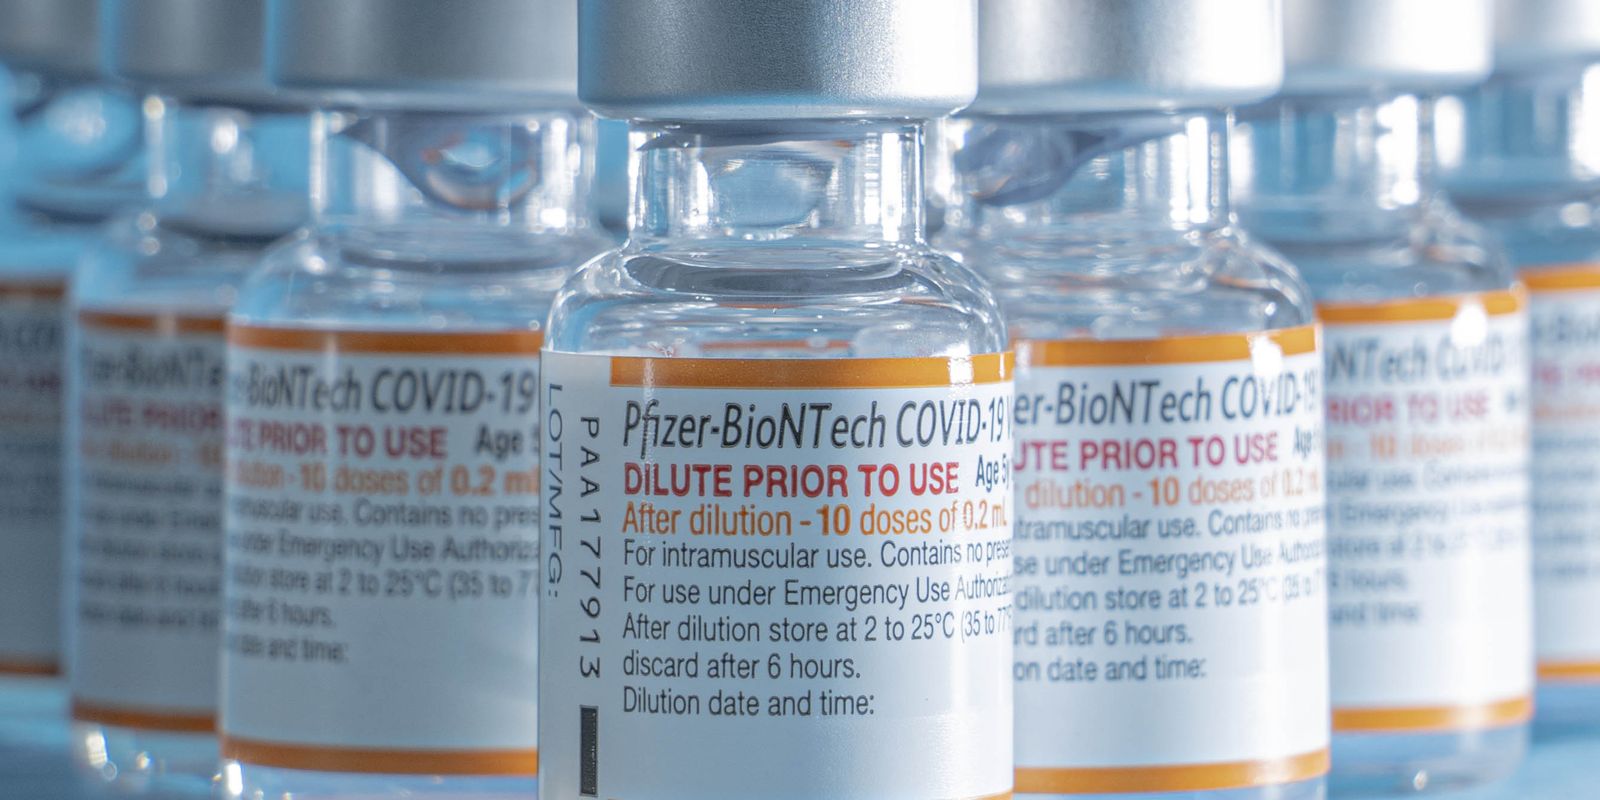 Vacinas Covid-19 pediátricas da Pfizer-BioNTech